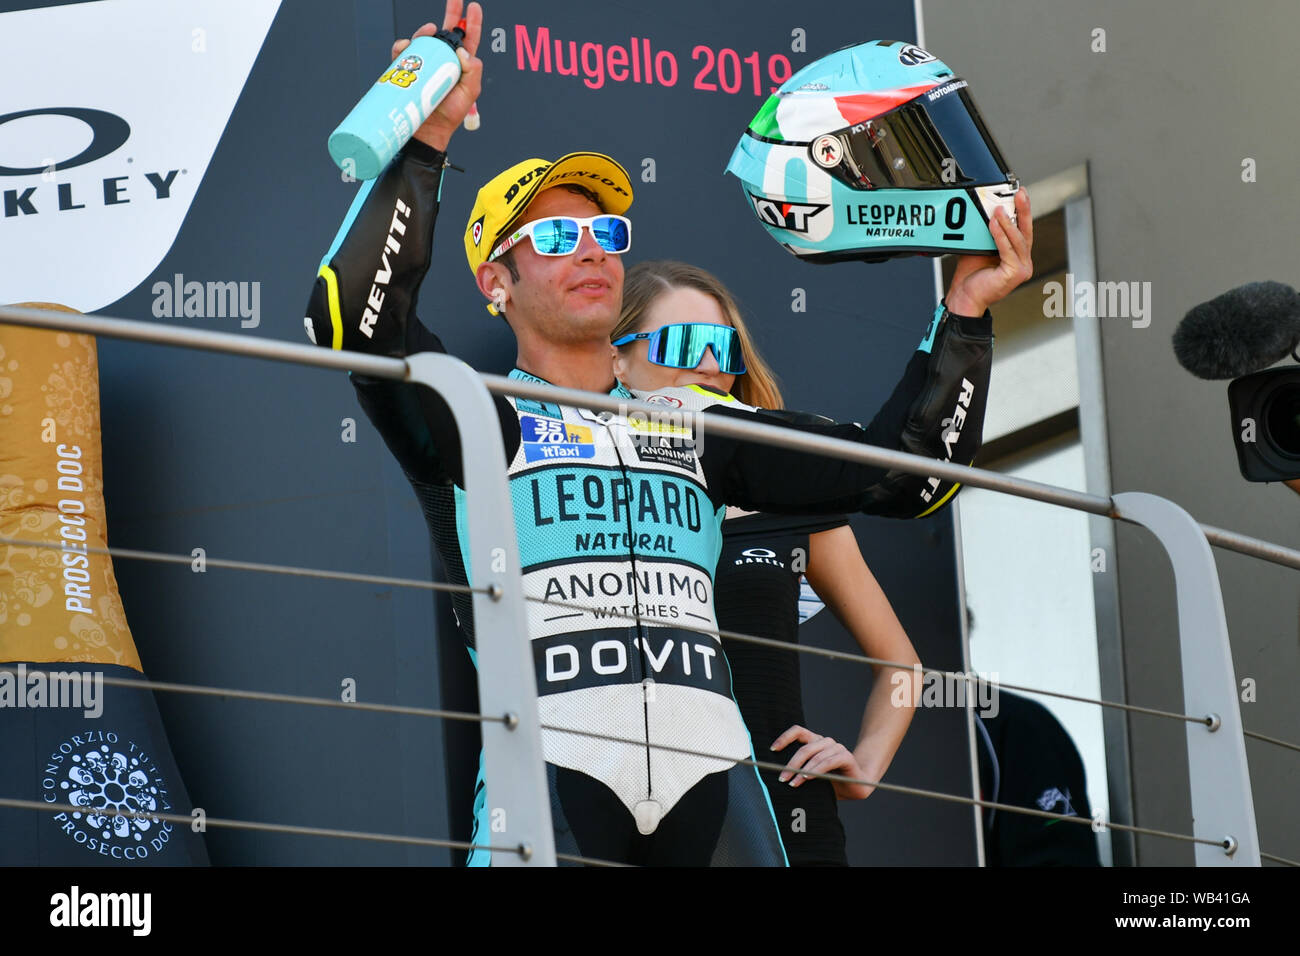 LORENZO DALLA PORTA LEOPARD RACING SUL PODIO OF MOTO3 during Grand Prix Of Italy 2019 - Mugello - Podio Moto3, Mugello, Italy, 02 Jun 2019, Motors Mot Stock Photo